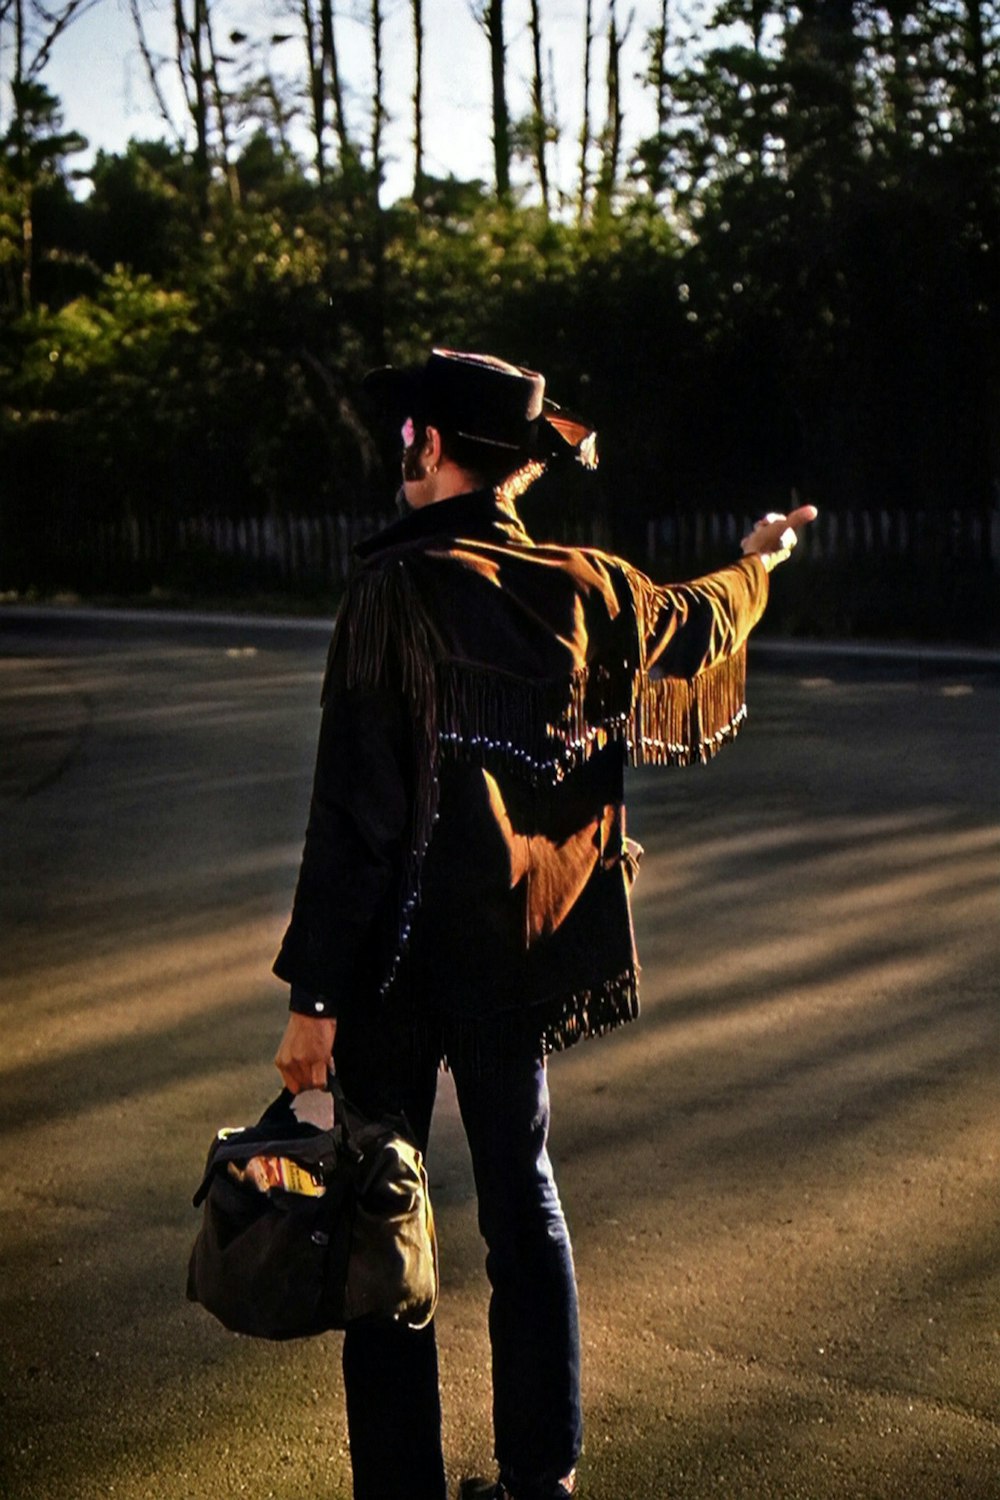 Un uomo in piedi sul ciglio di una strada con una borsa